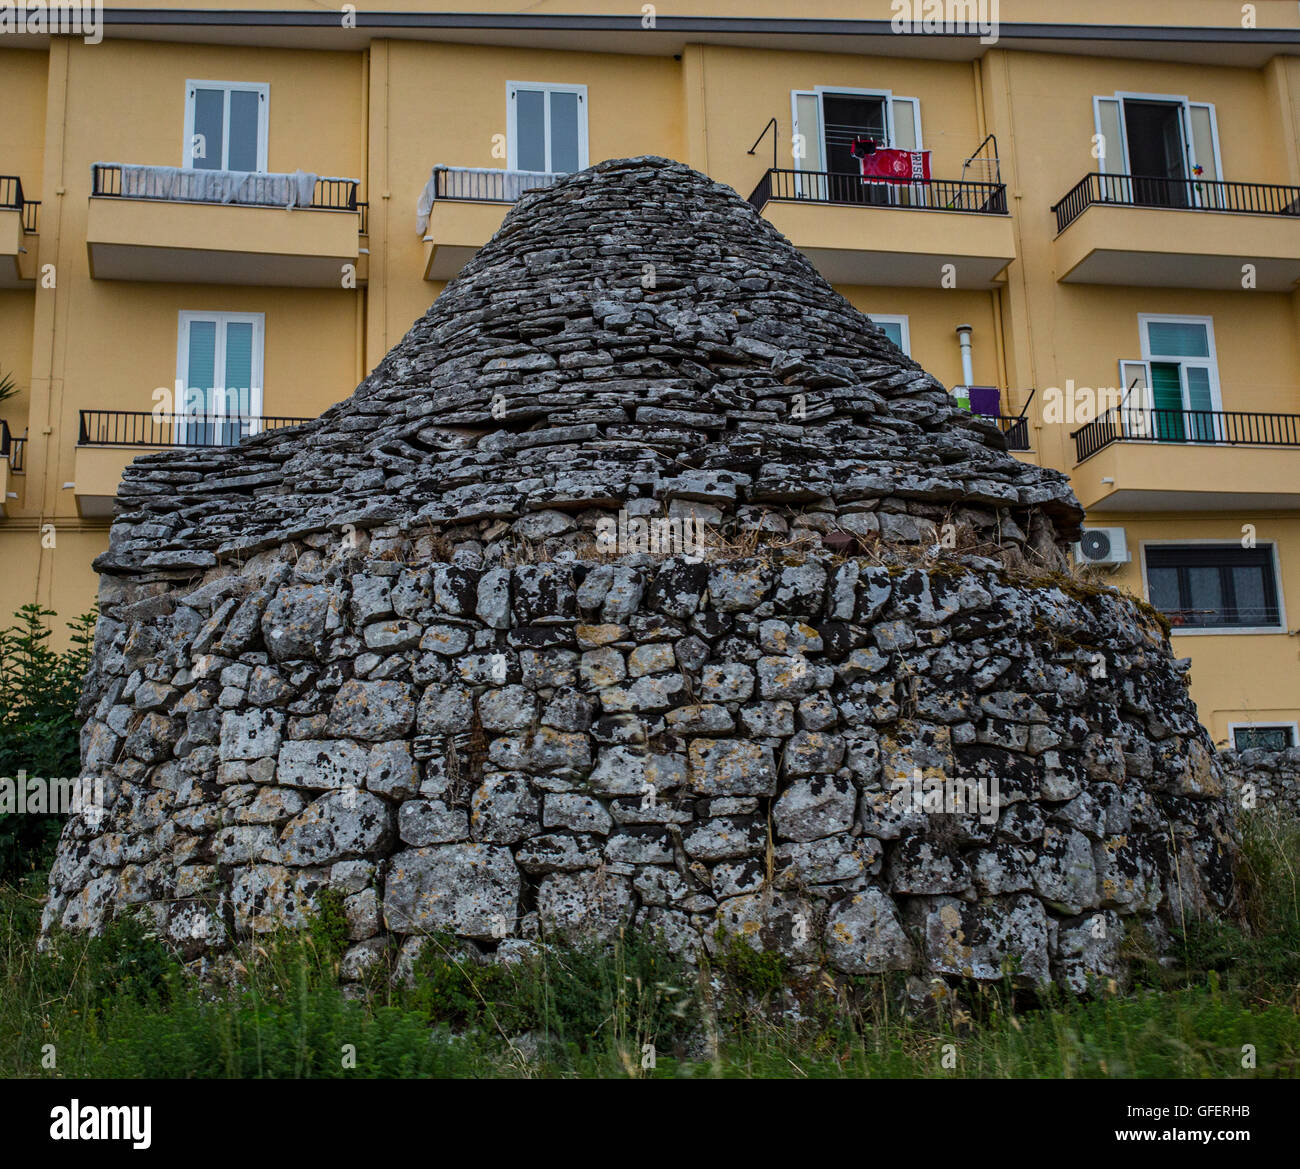 Ein traditionelles Trulli-Haus sieht man vor einem modernen Wohnblock in Martina Franca, Apulien, Italien Stockfoto